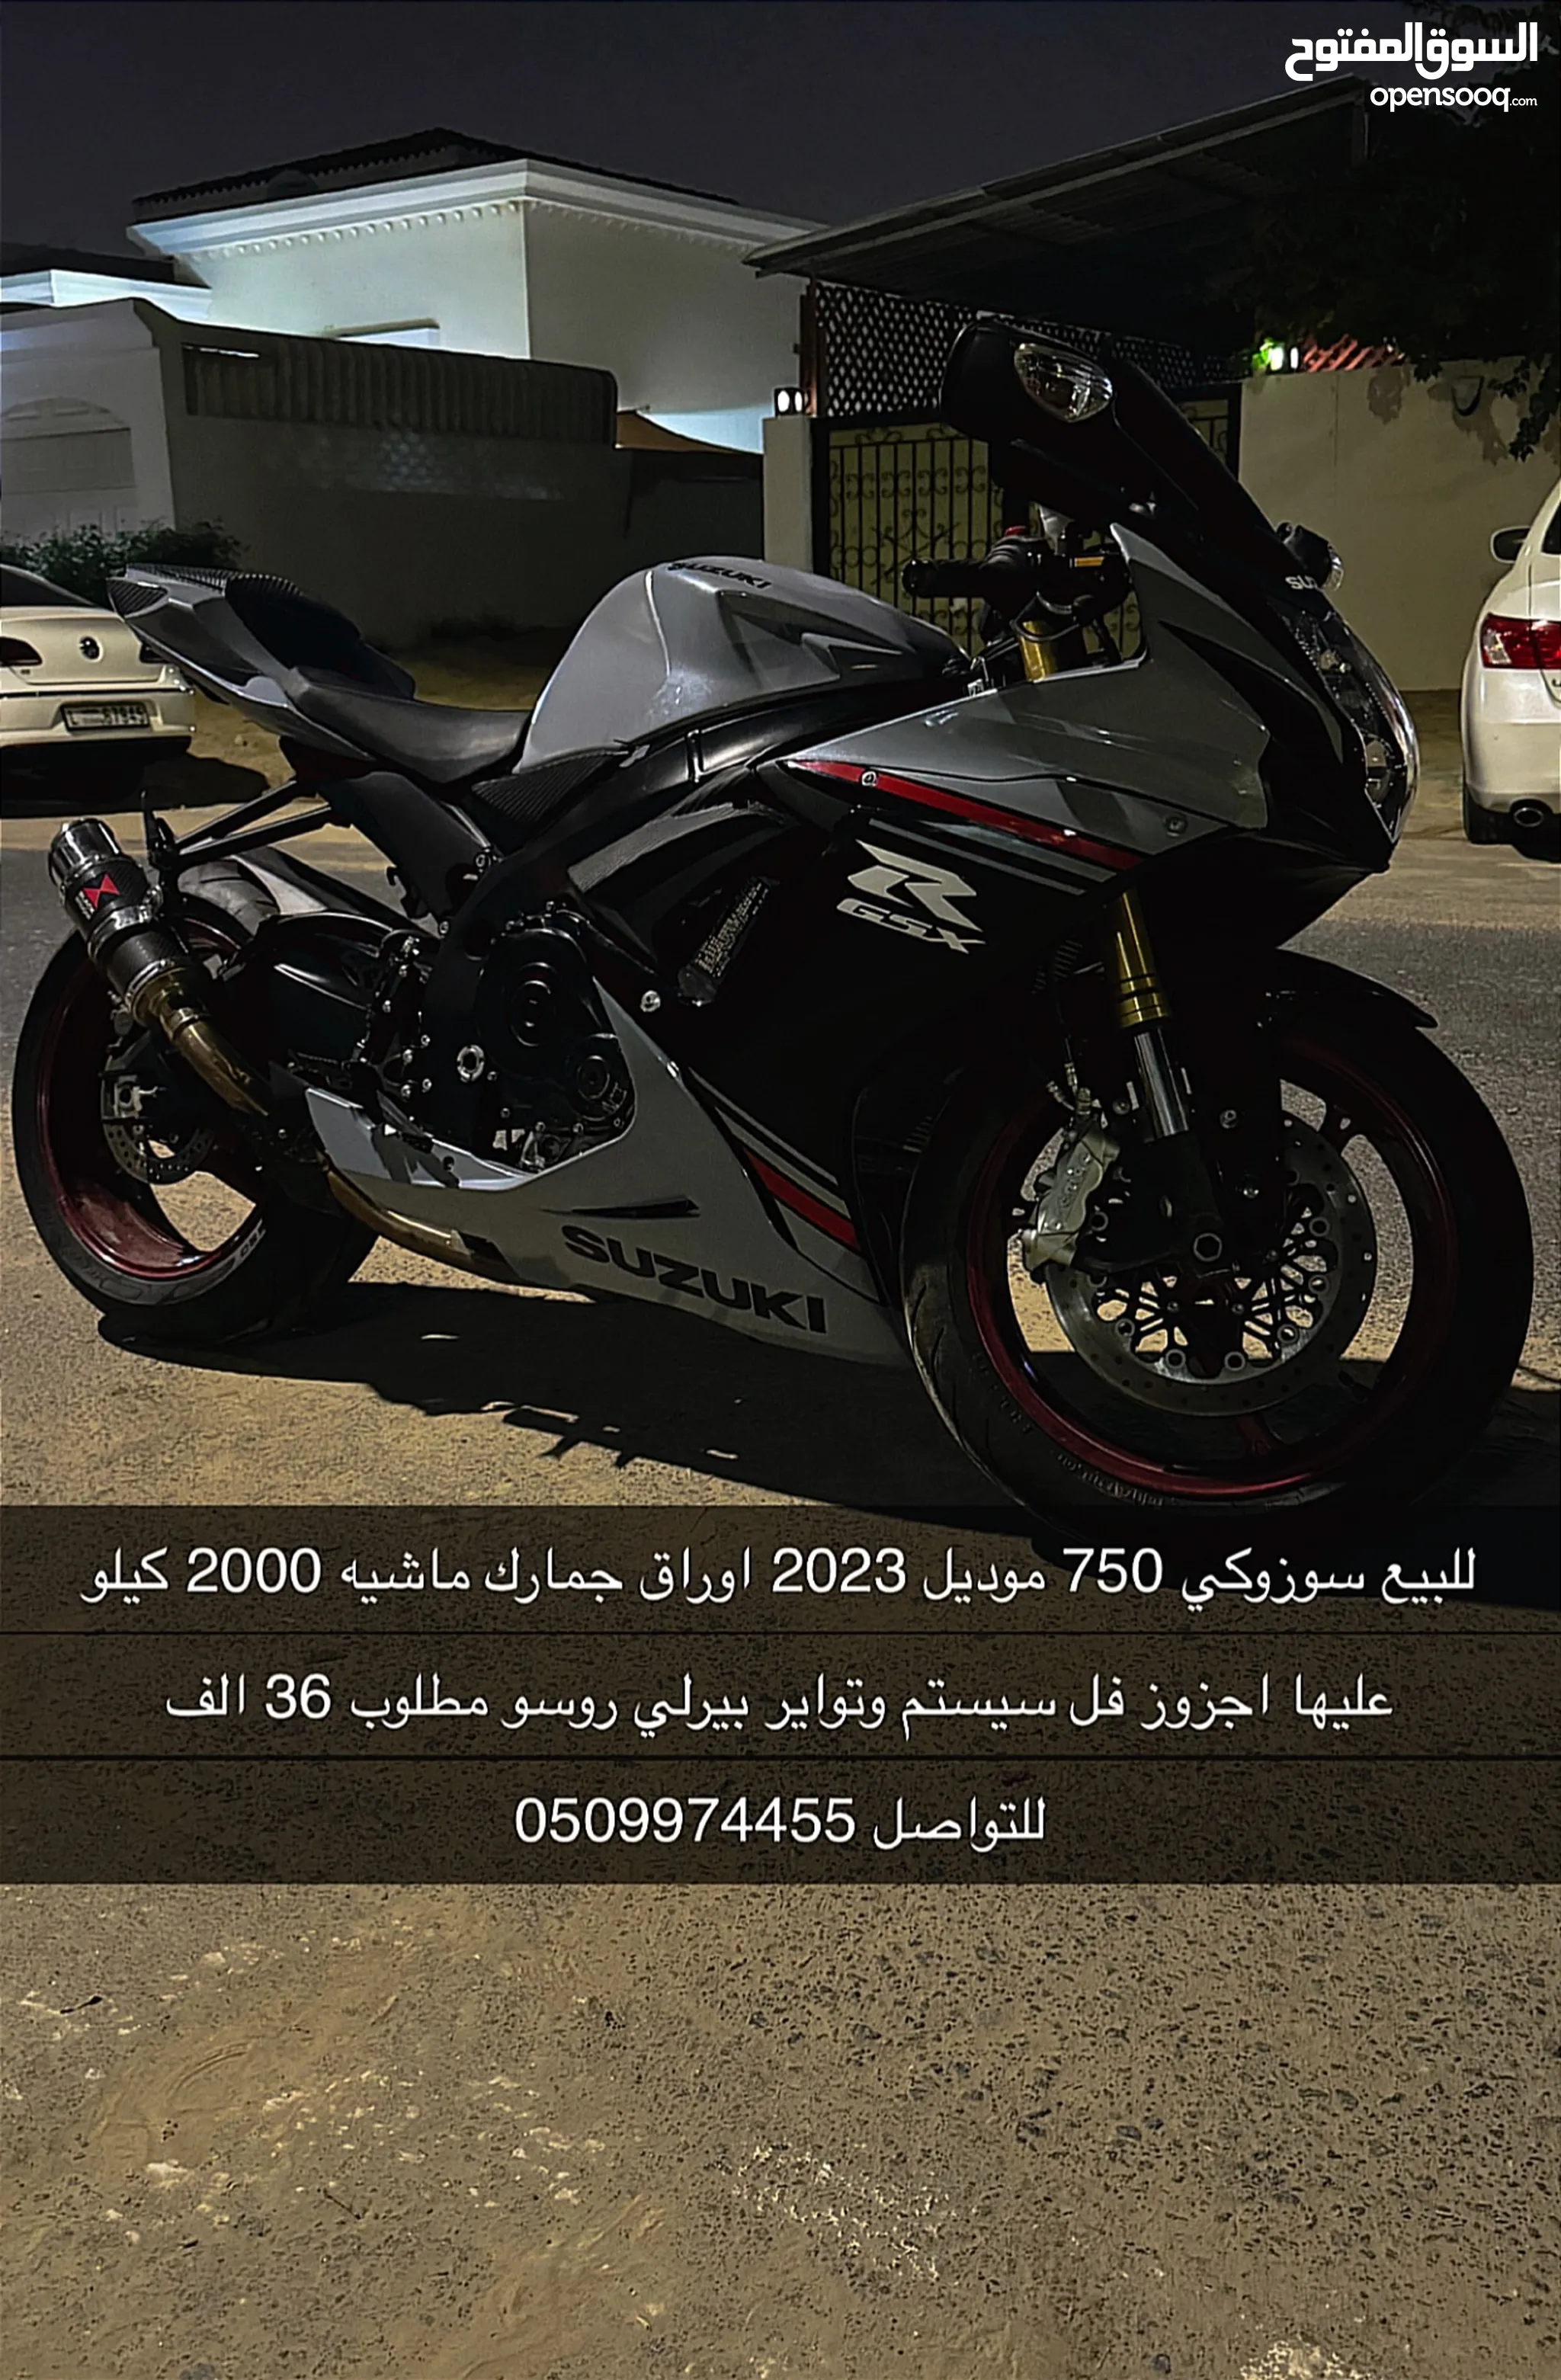 دباب سوزوكي GSX-R750 للبيع في الإمارات : دراجات مستعملة وجديدة : ارخص  الاسعار | السوق المفتوح